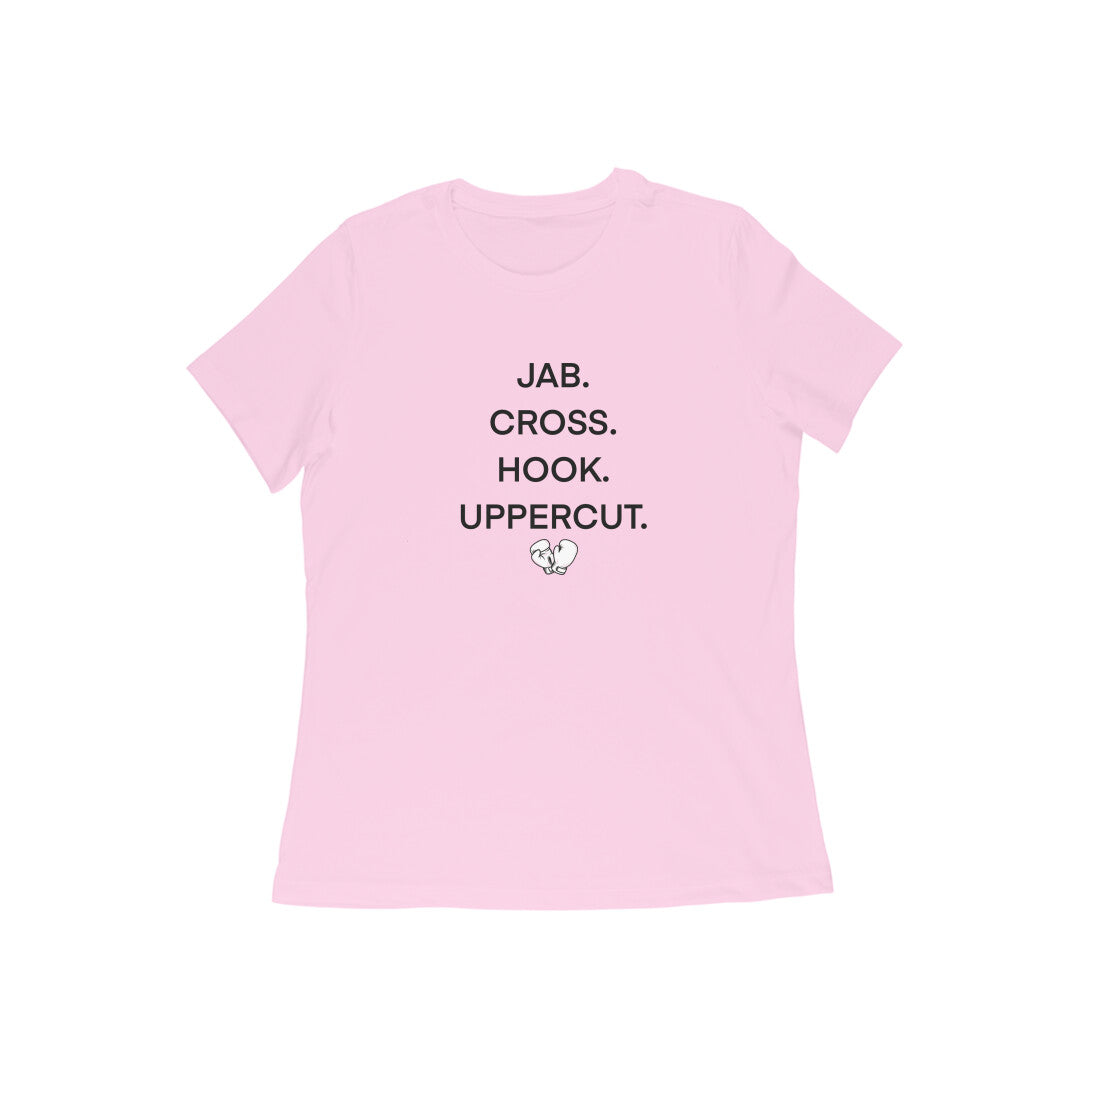 Jab cross hook uppercut Boxing T-shirt